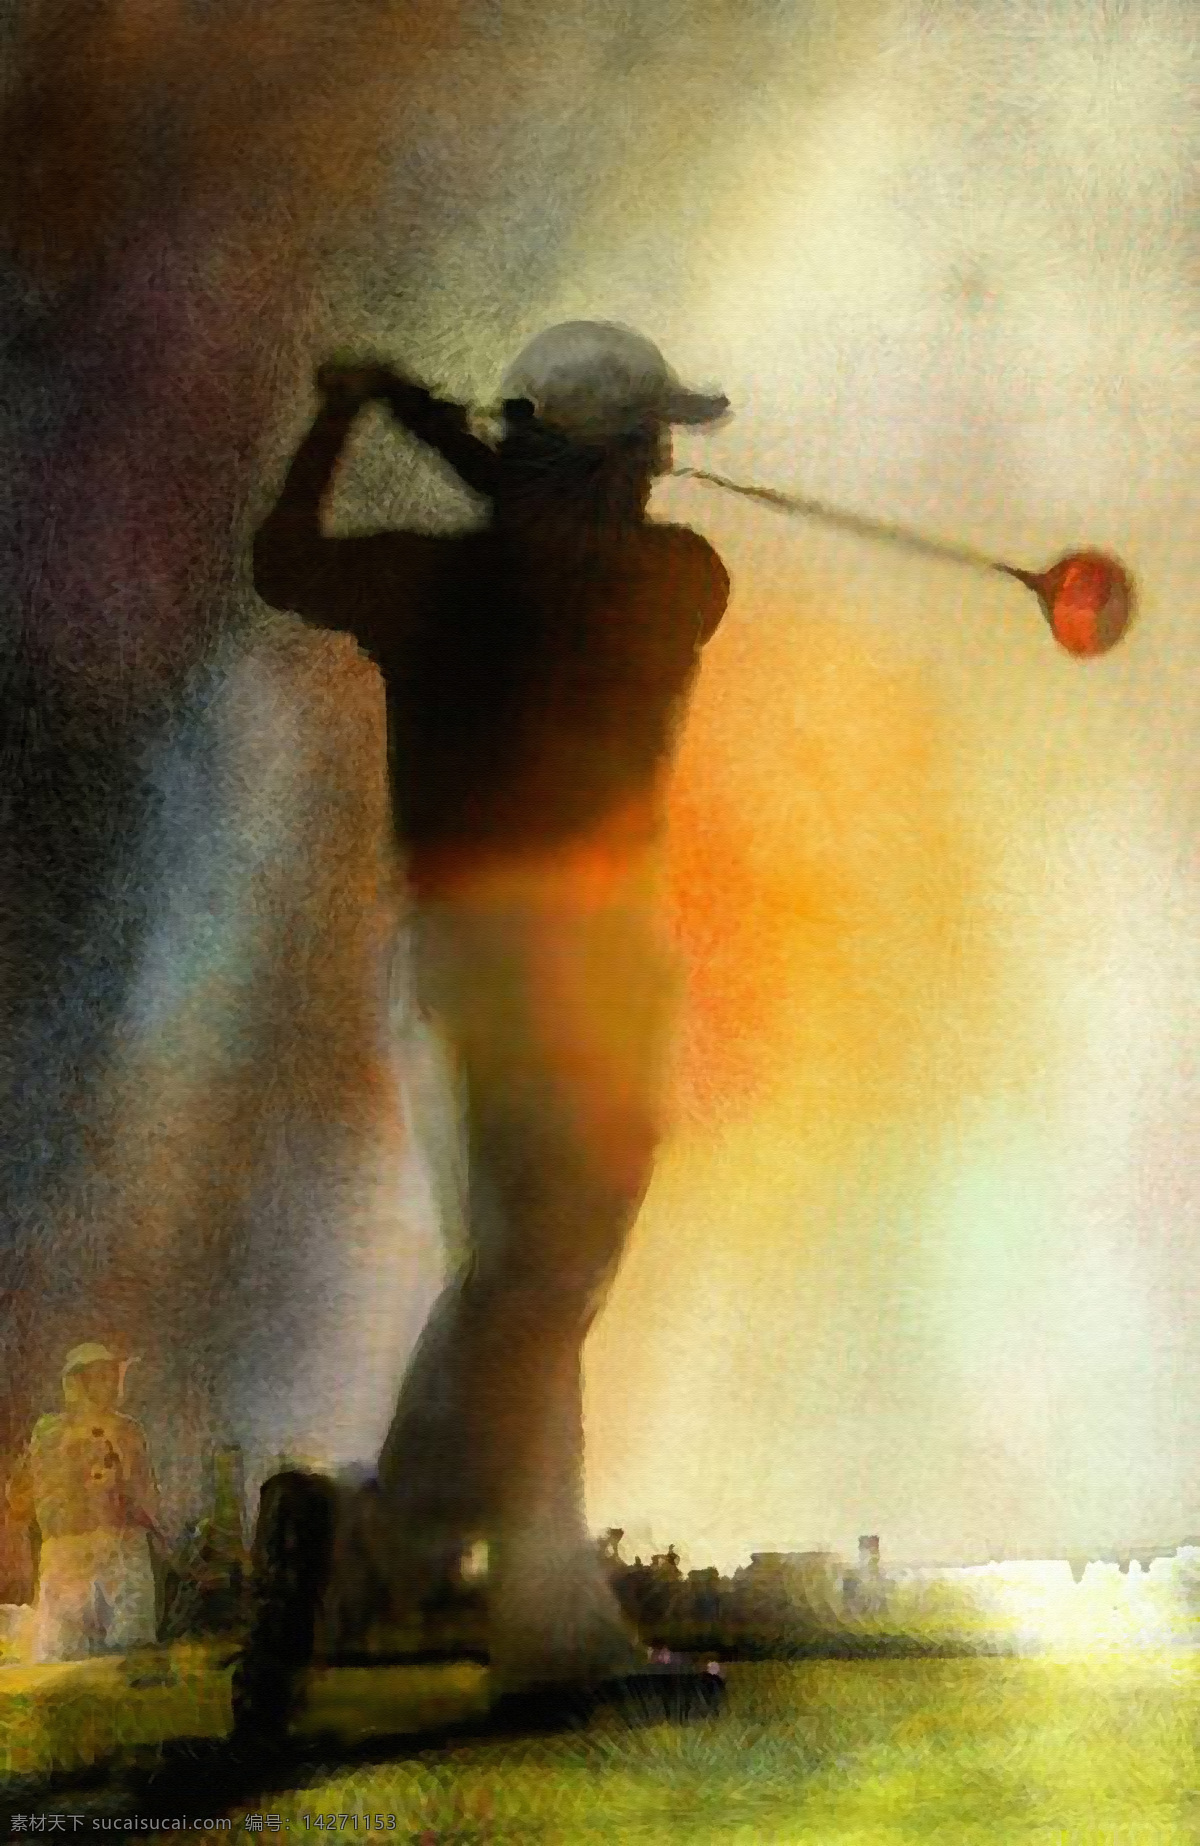 高尔夫艺术 圣安德鲁斯 苏格兰 高尔夫 果岭 球道 高尔夫球 苏格兰文化 高球 golf 体育 高尔夫运动 贵族 高贵 皇室运动 皇家 绘画 球场 油画 艺术 人物 体育运动 文化艺术 绘画书法